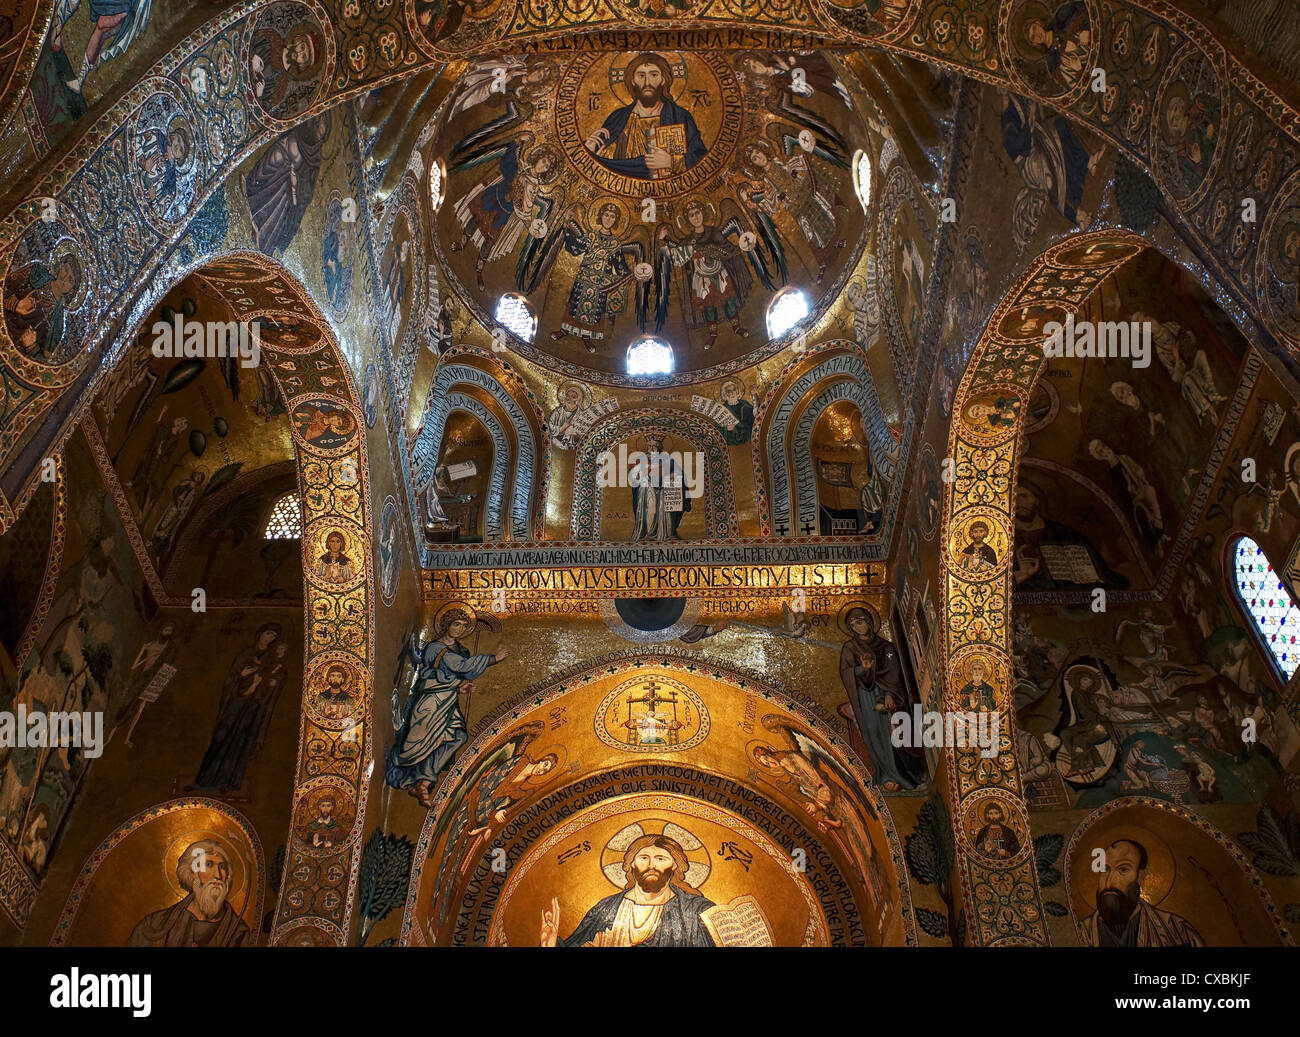 Innenansicht der Apsiden und die Kuppel in der Pfalz Kapelle von Palermo in Sizilien Stockfoto